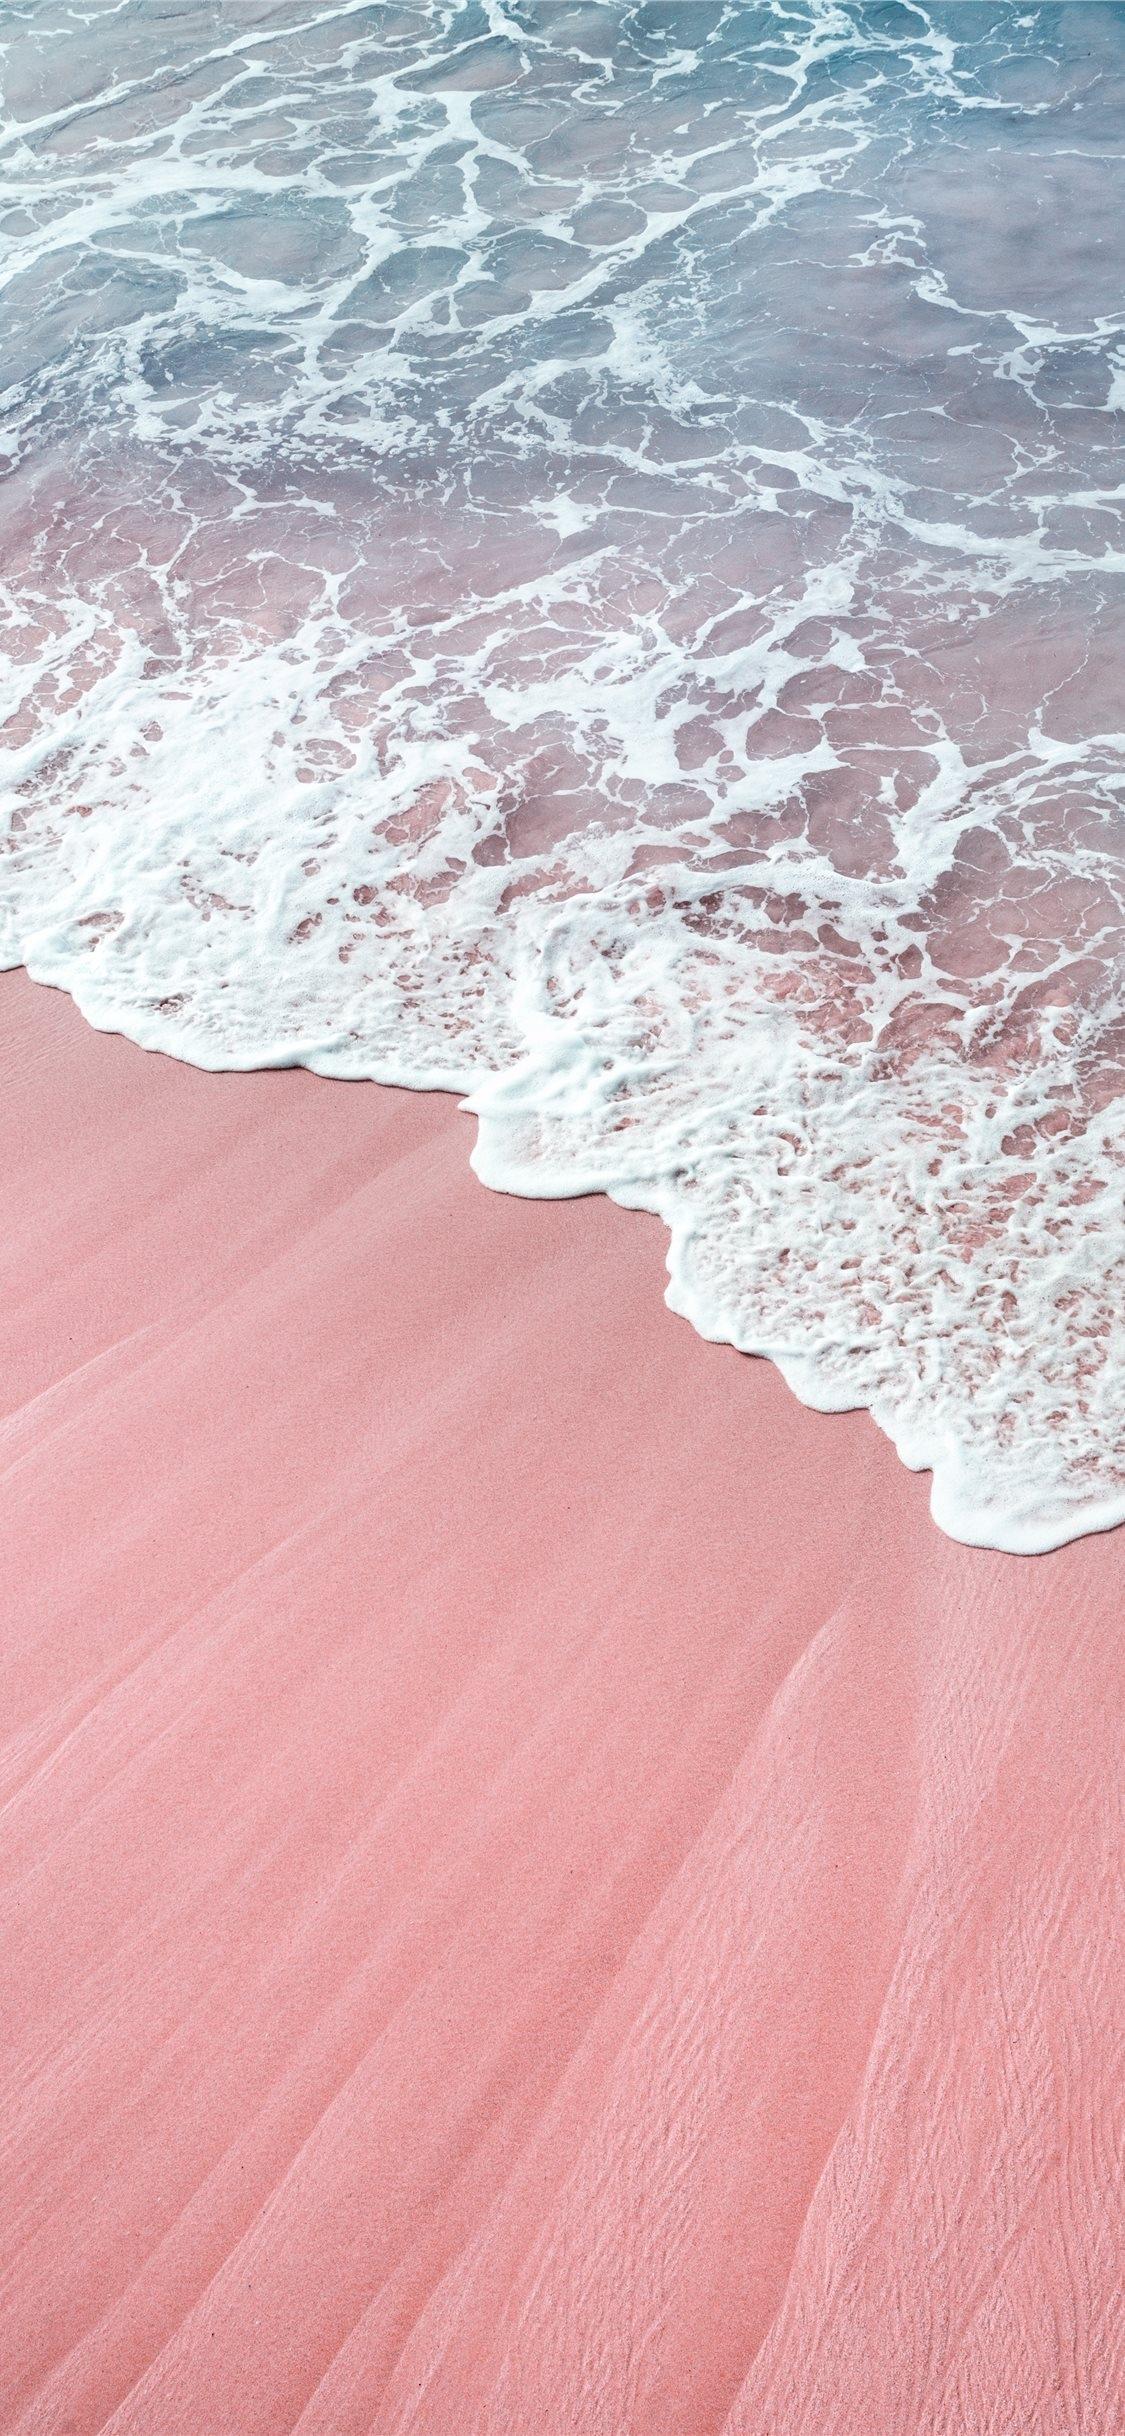 全球最有特色的沙滩之一粉色沙滩